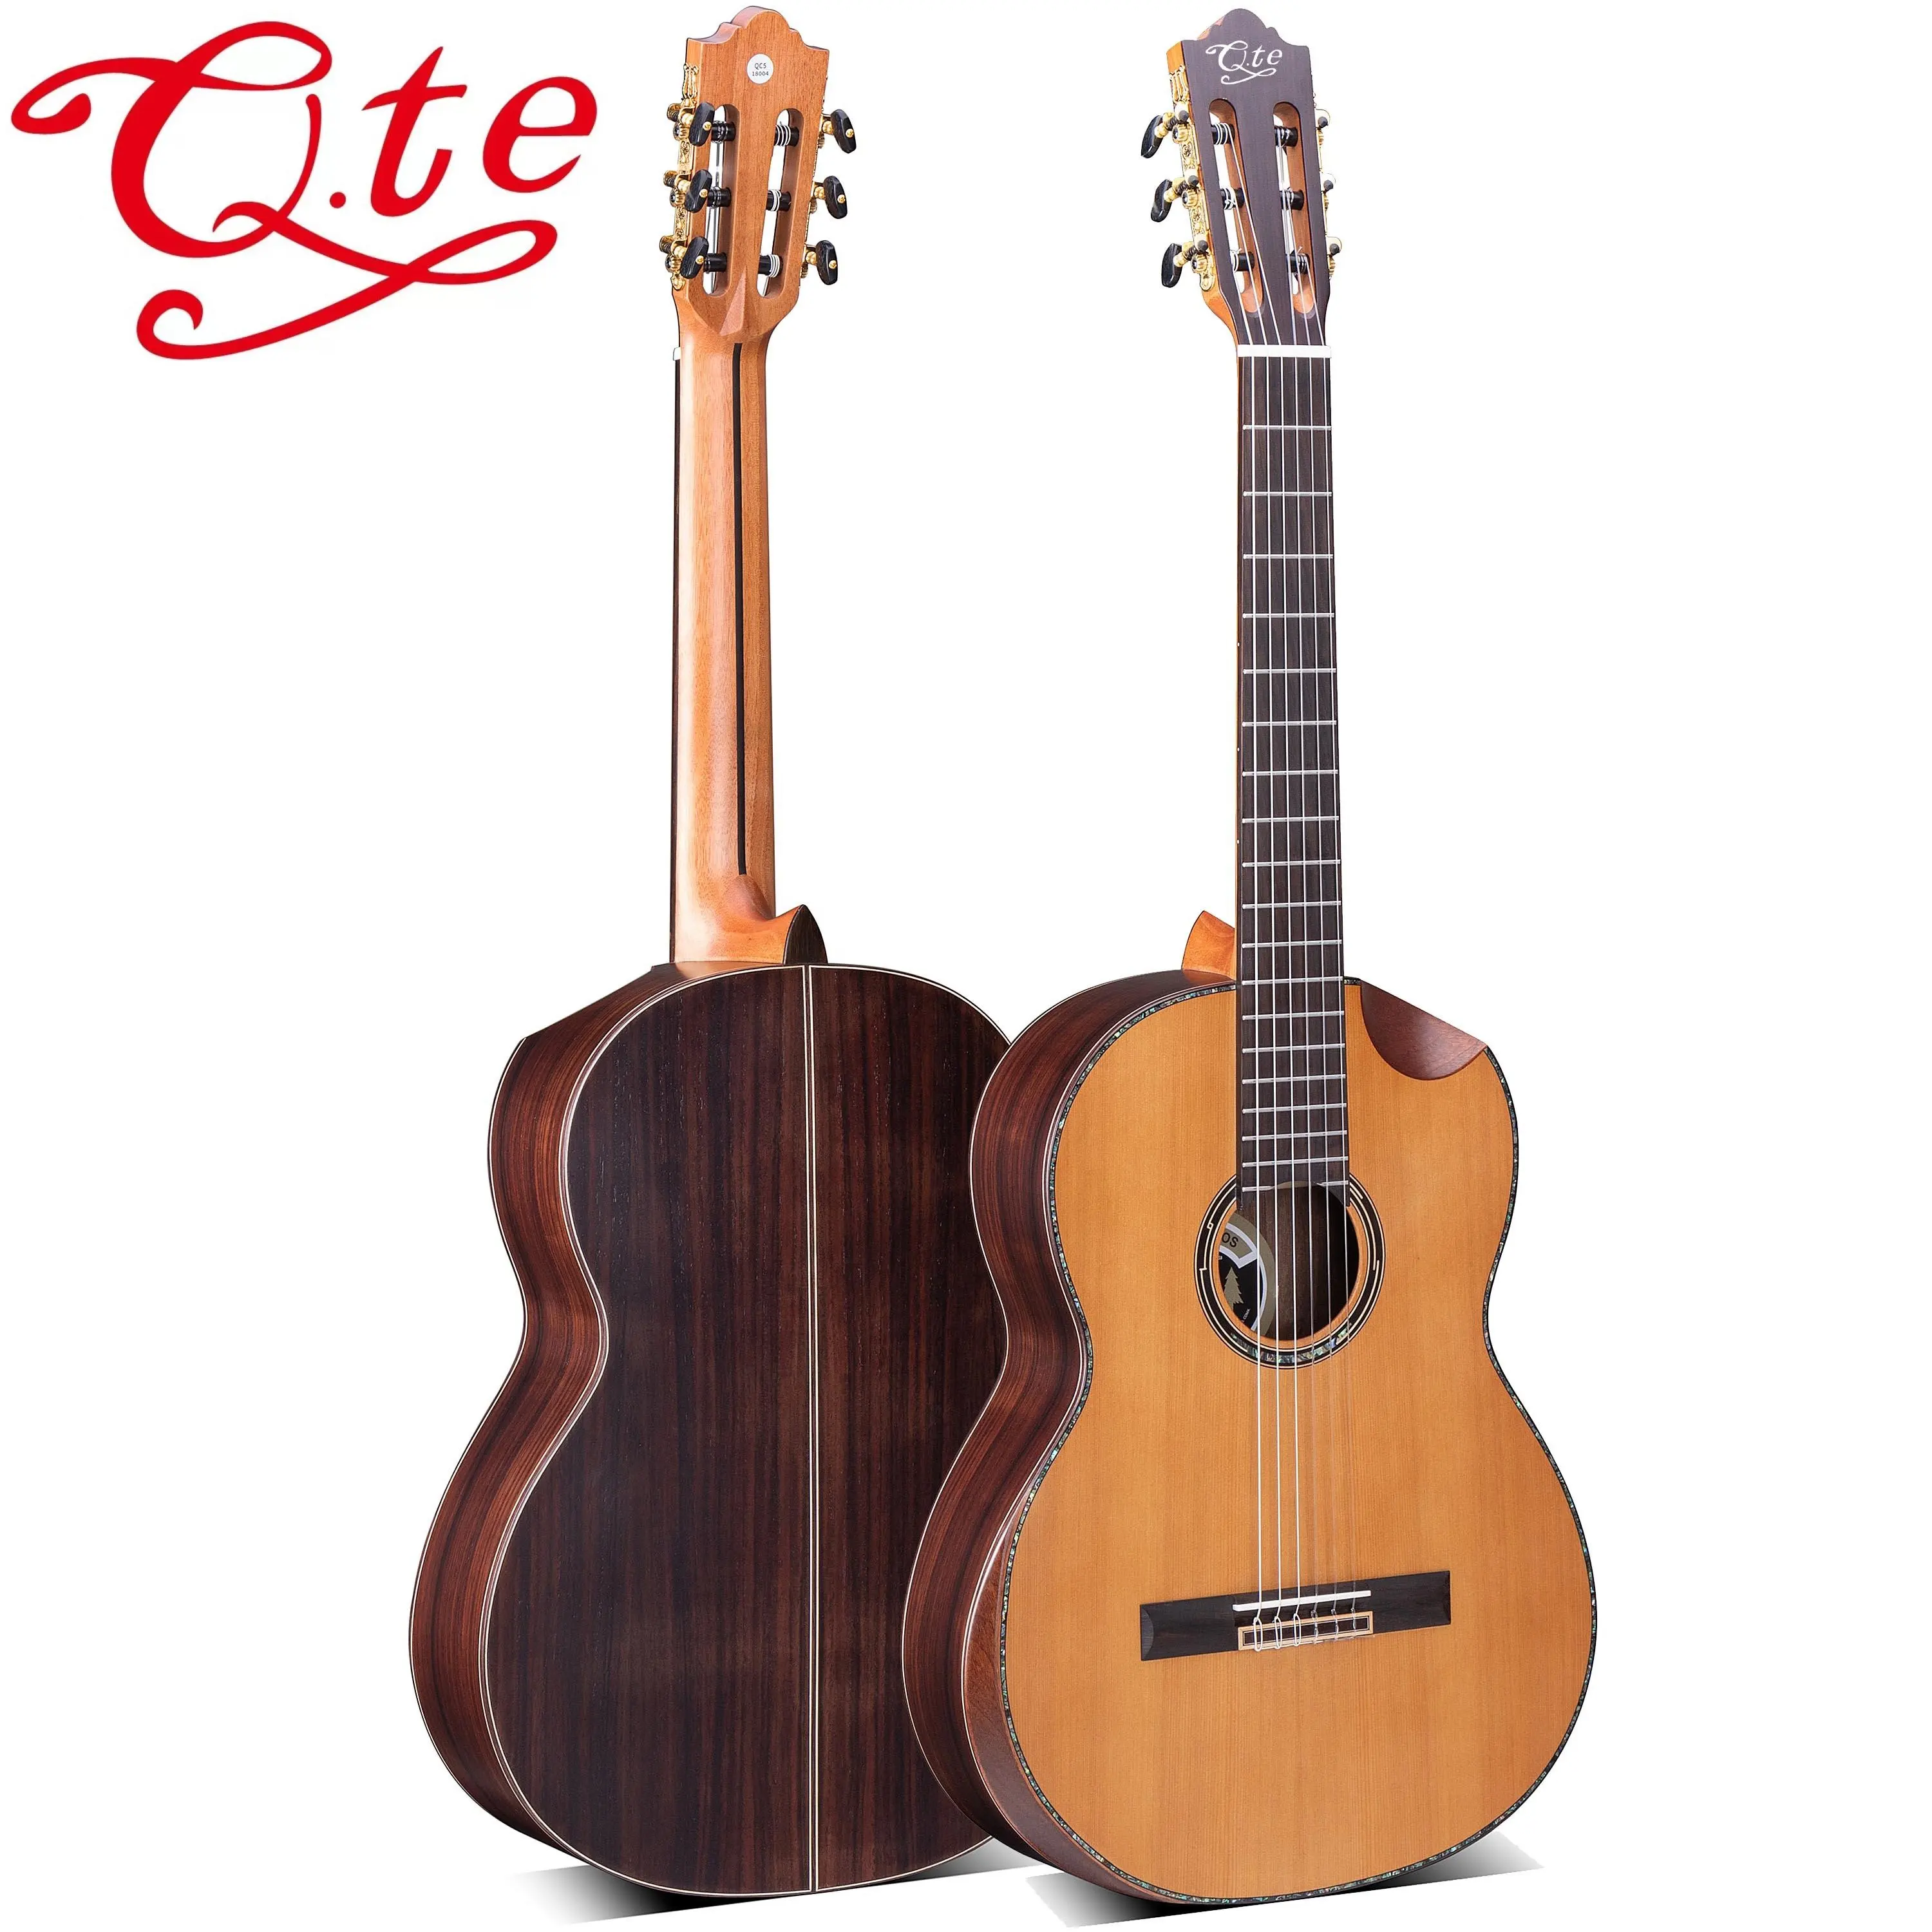 Chitarra classica QTE di alta qualità con corpo in abete massello dall'aspetto gradevole